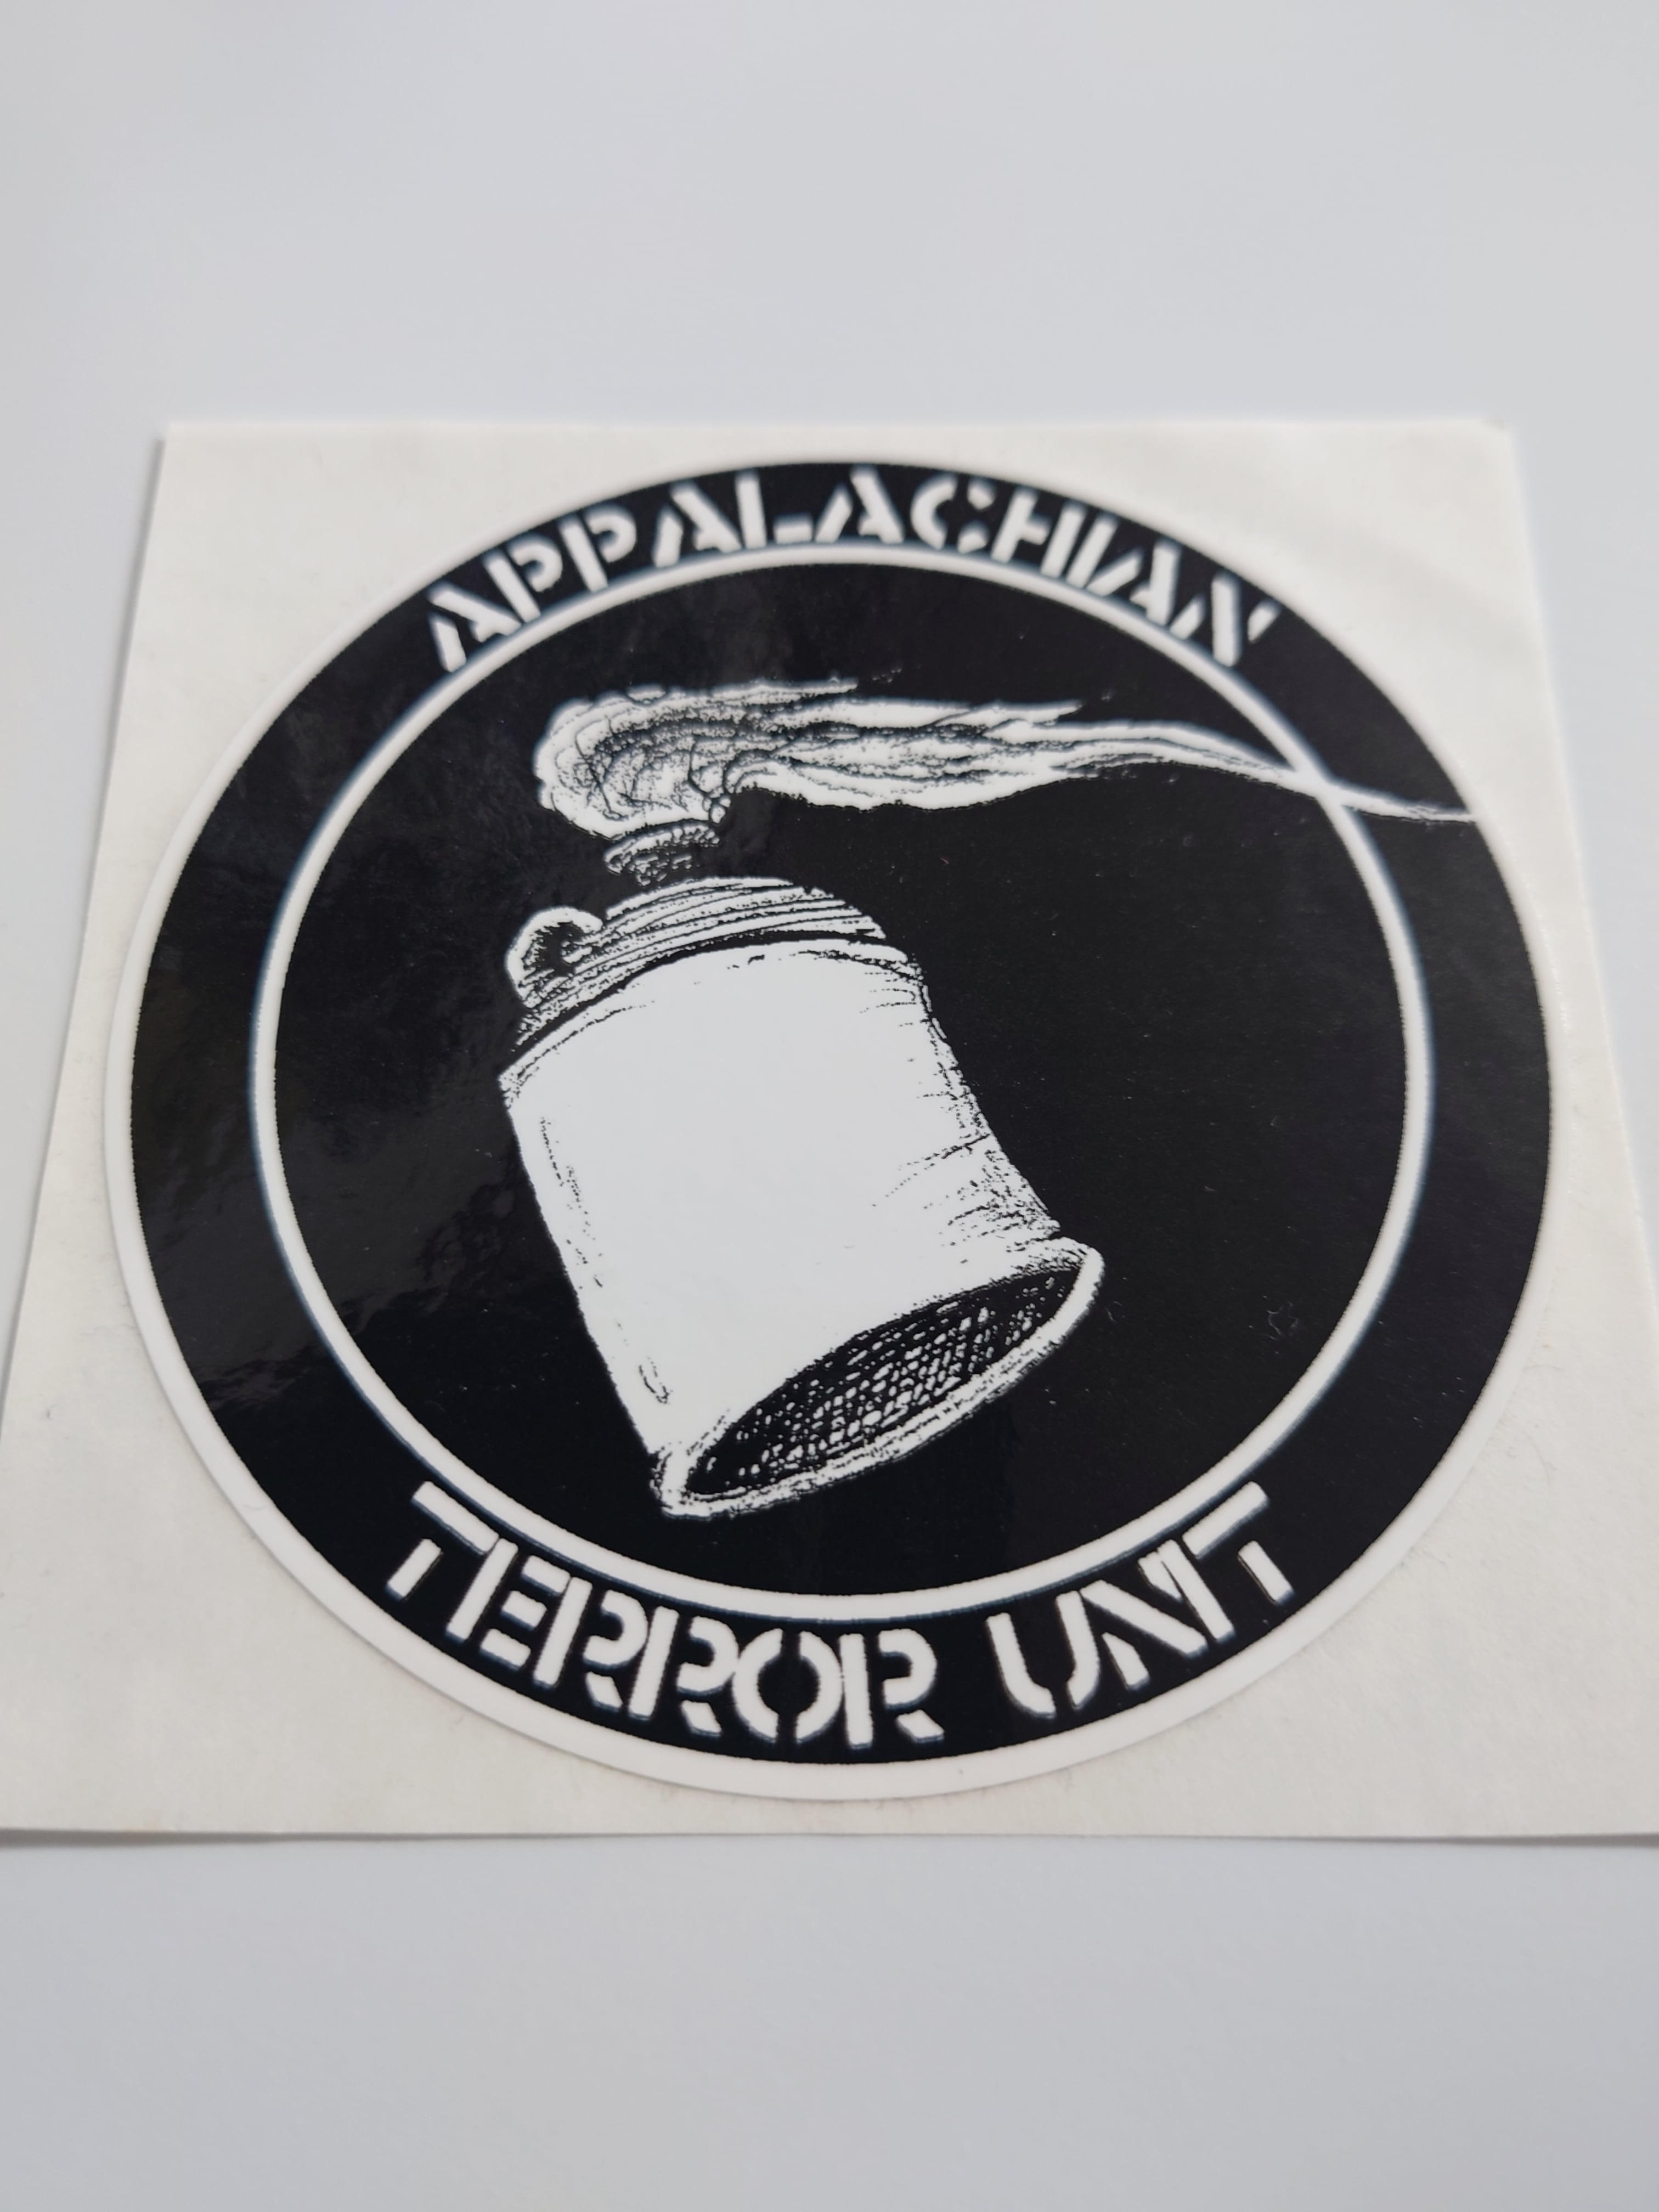 APPALACHIAN TERROR UNIT/ステッカー RECORD SHOP CONQUEST/レコードショップコンクエスト